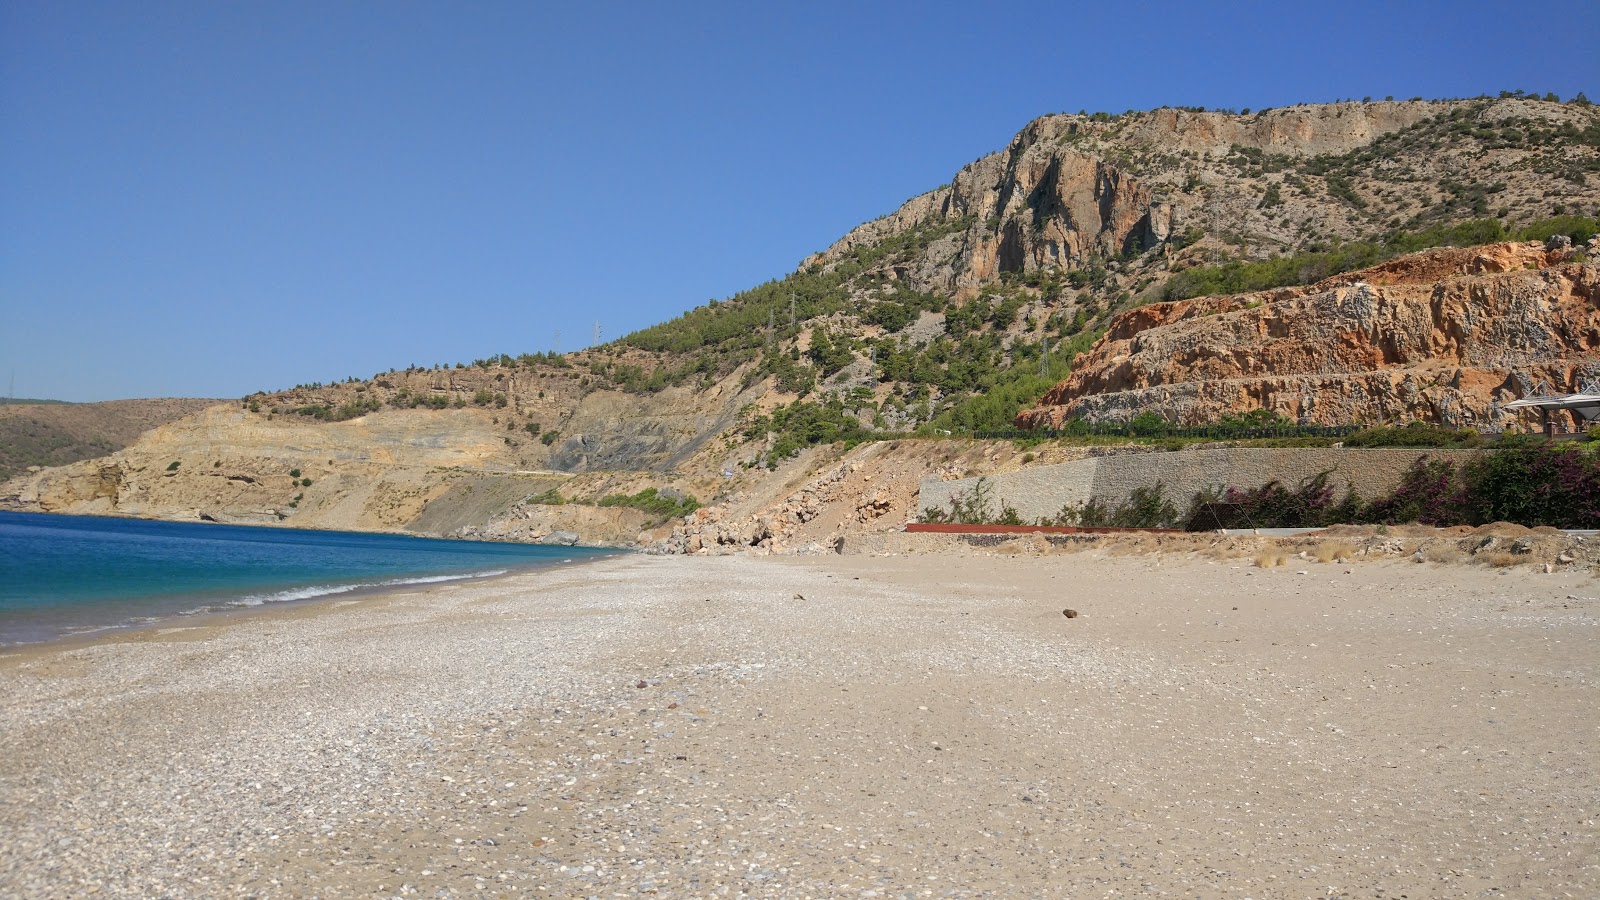 Fotografija Yanisli Cave beach podprto z obalami